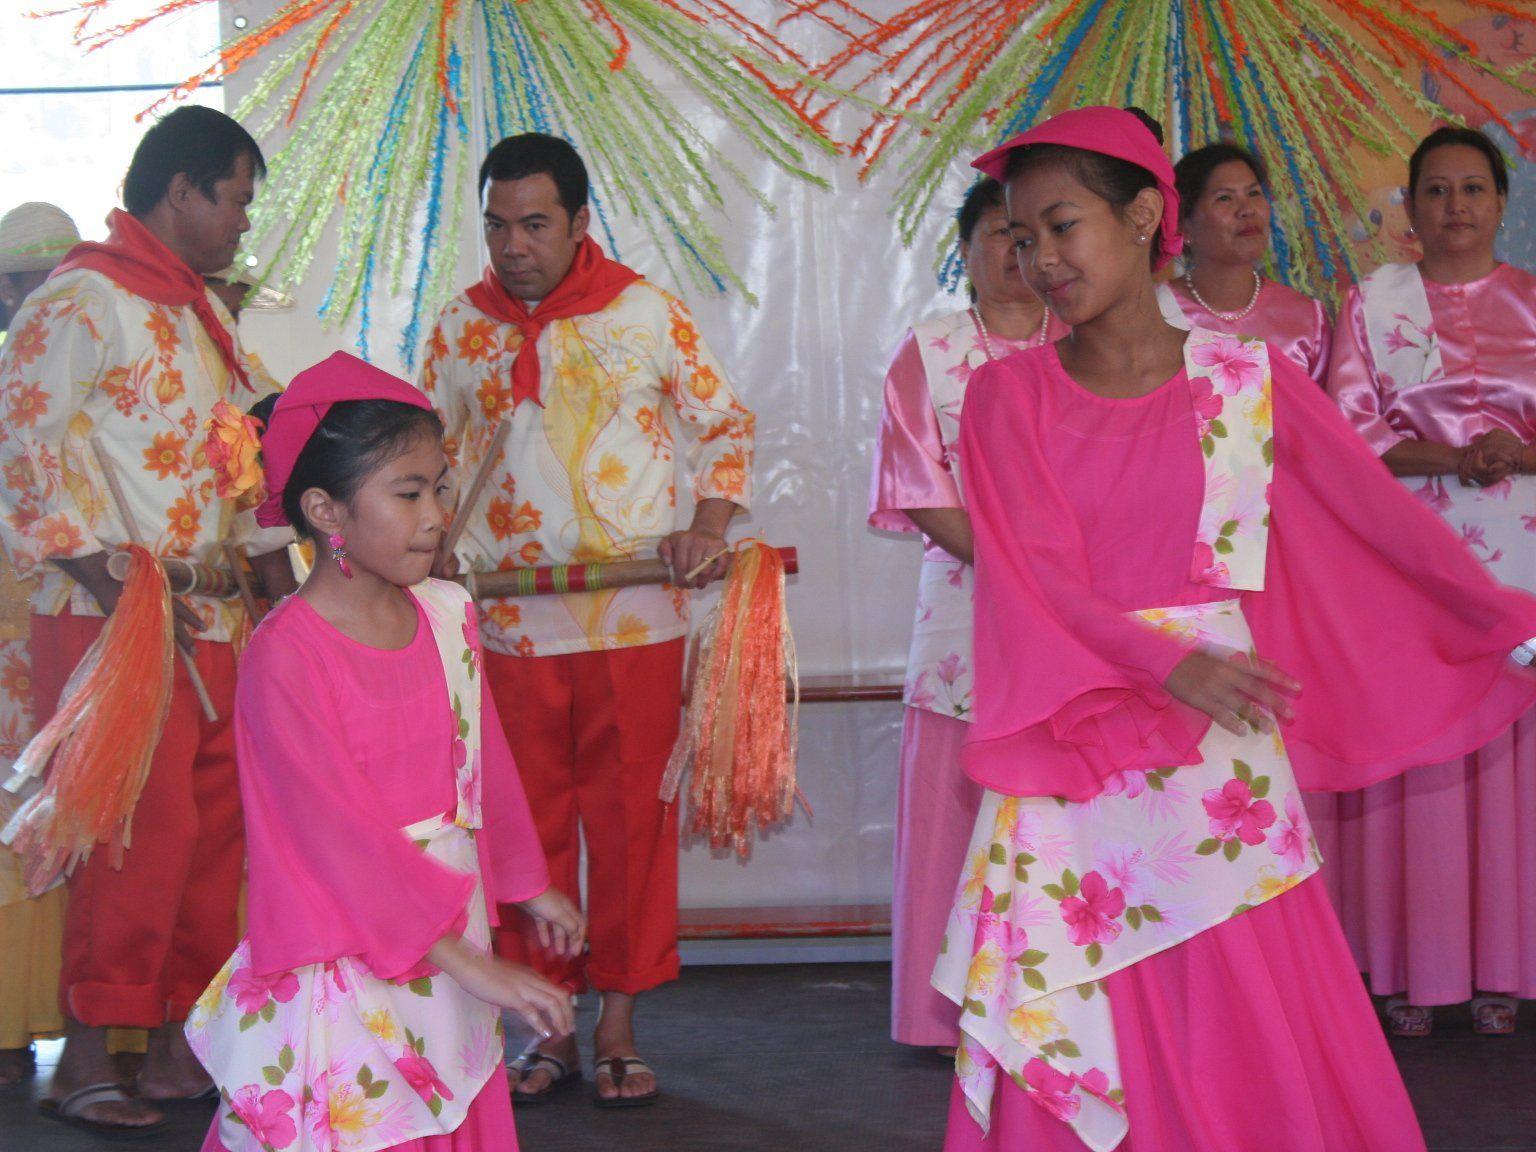 Gesangs- und Tanzgruppe aus den Philippinen